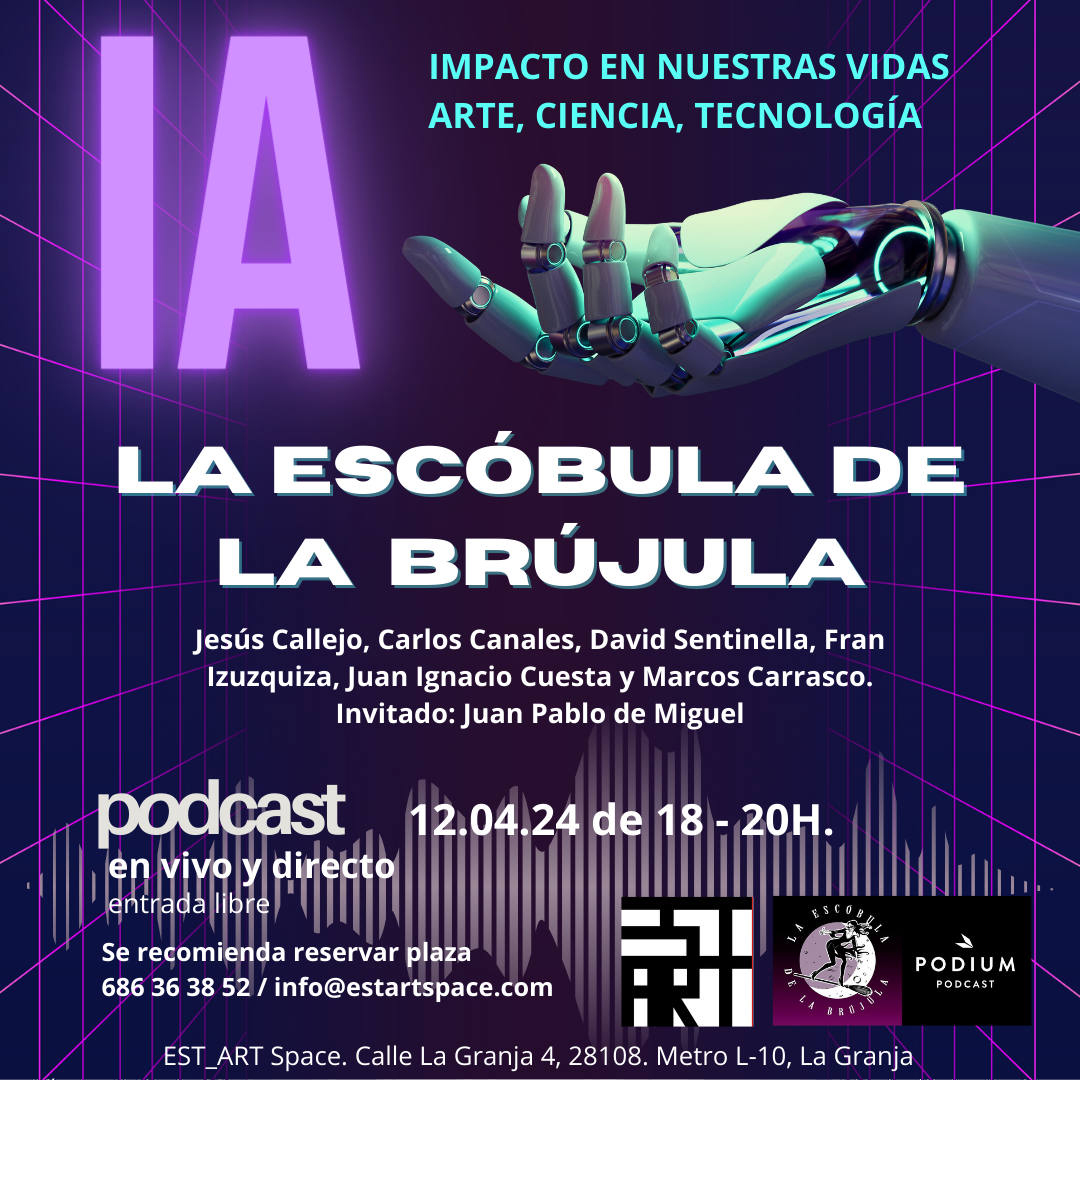 El próximo viernes 12 de abril de entre las 18 y las 20 horas EST_ART Space acoge el podcast La Escóbula de la Brújula. Un programa en vivo y en directo sobre la IA abierto al público. | EST_ART Space Alcobendas, Madrid